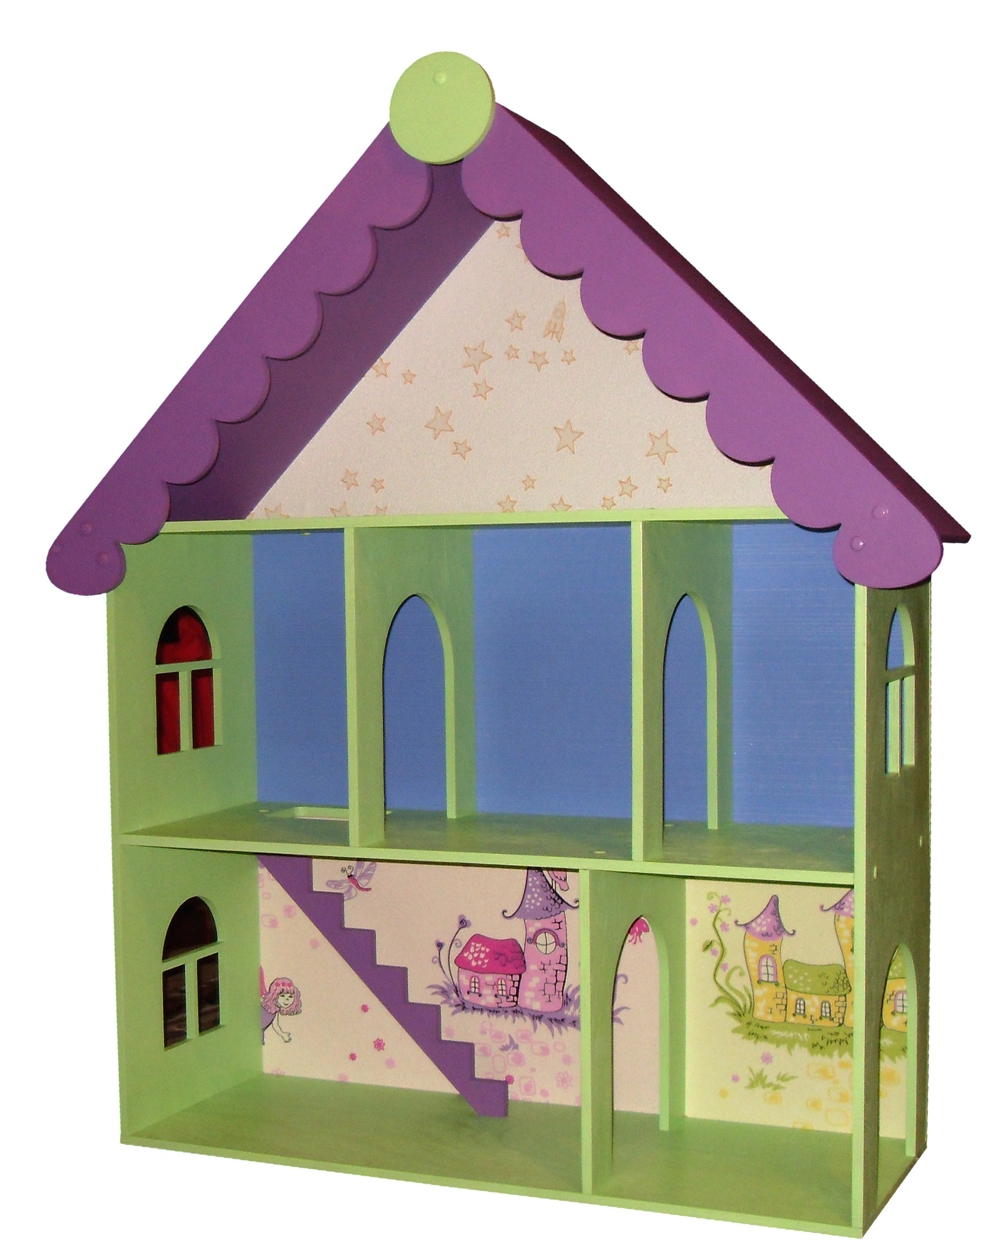 Kit de casa de muñecas victoriana cortada con láser Juguete para niños